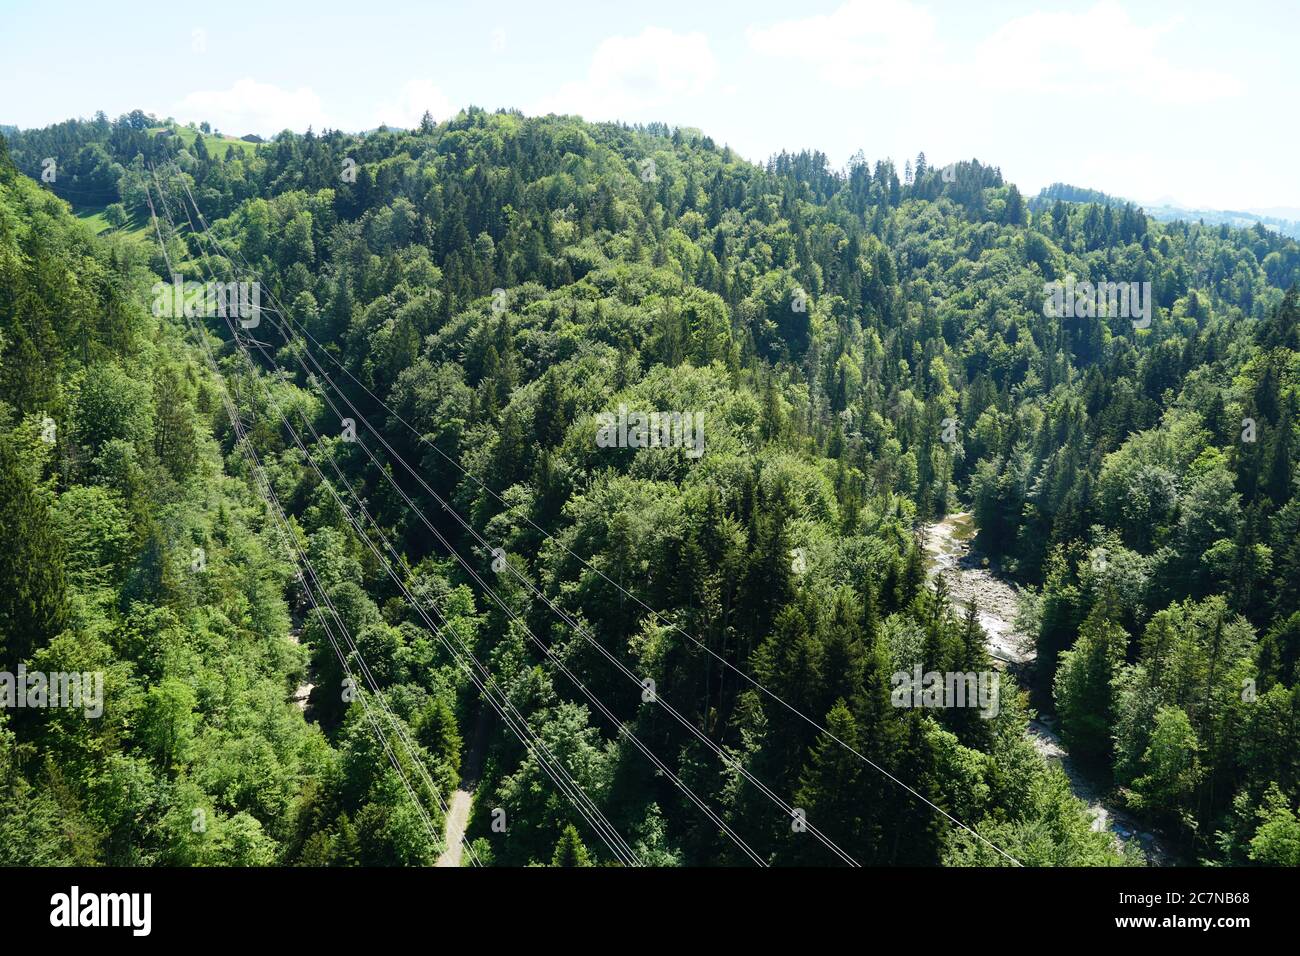 Zwei kleine Hügel, die von Mischwäldern bedeckt sind. Zwischen ihnen befinden sich Drähte oder Kabel für den Transport von Elektrizität. Es gibt auch einen kleinen Fluss. Stockfoto